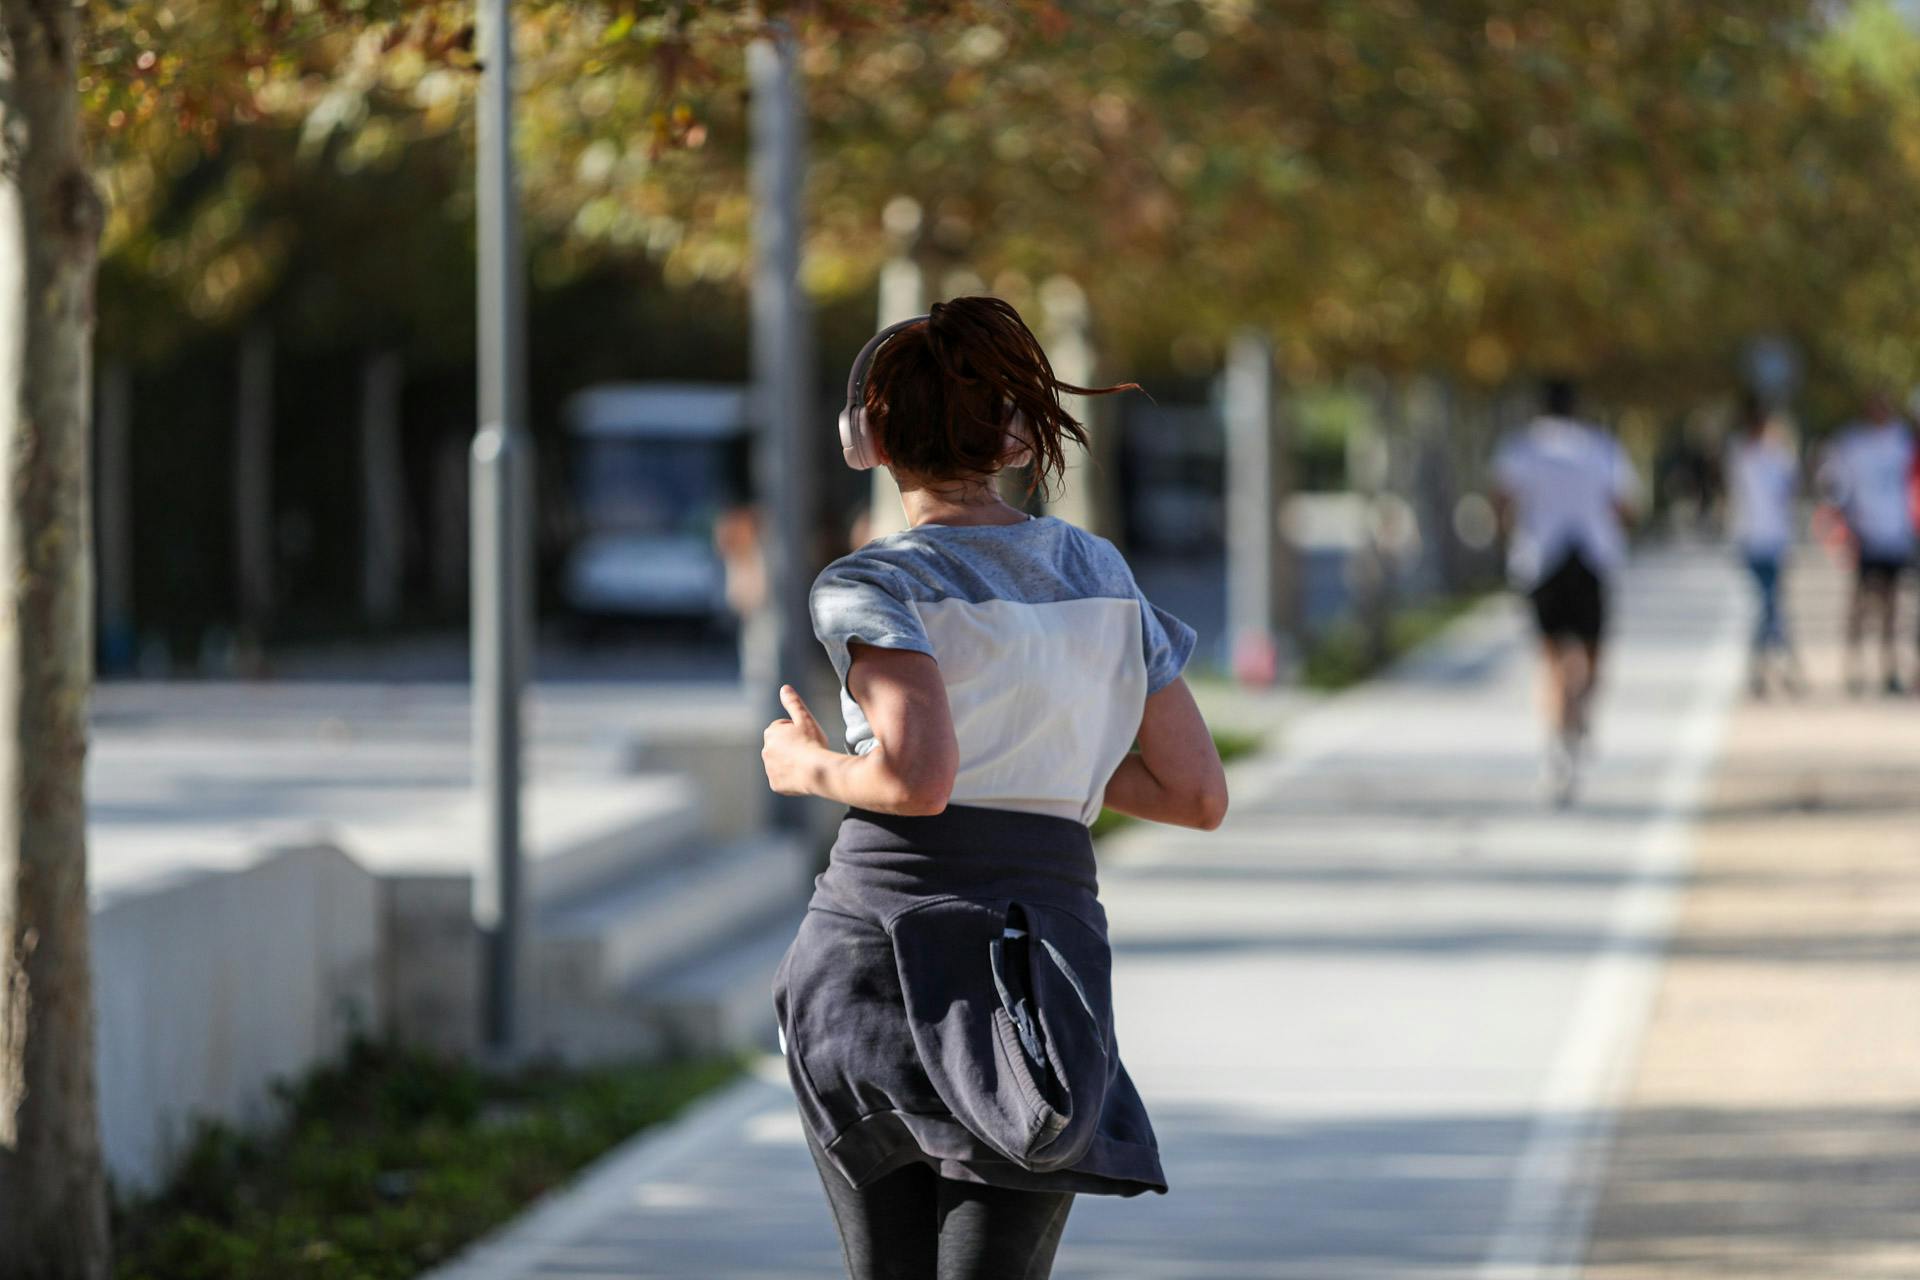 Κέντρο Πολιτισμού Ίδρυμα Σταύρος Νιάρχος: Διοργανώνει πρωινό recovery run με tips για το τρέξιμο και πικ-νικ!